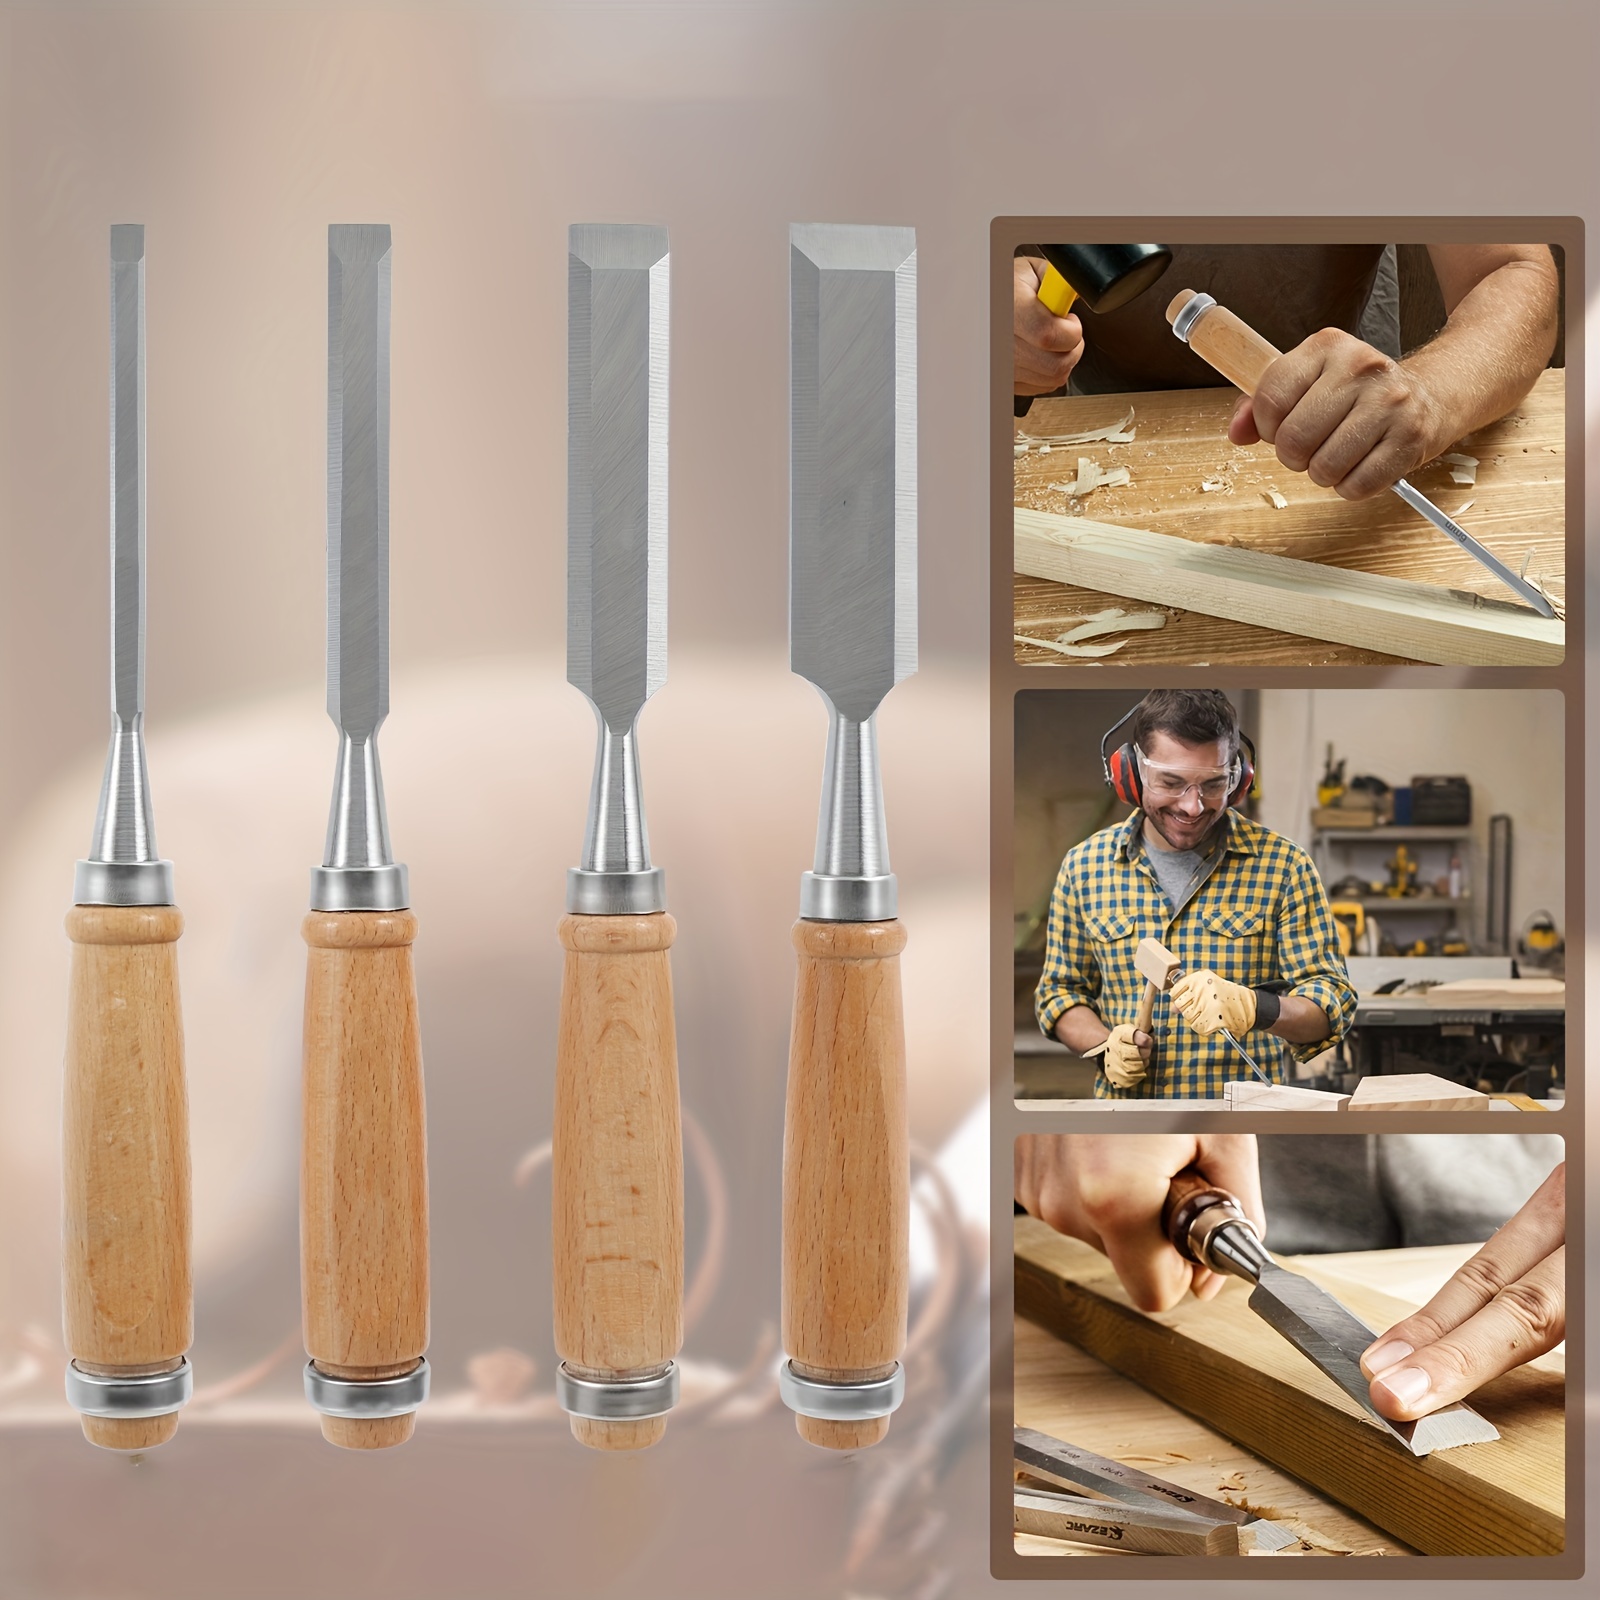 12pcs Woodcut Knife Wood Carving Tools Woodworking - 4pcs Wood